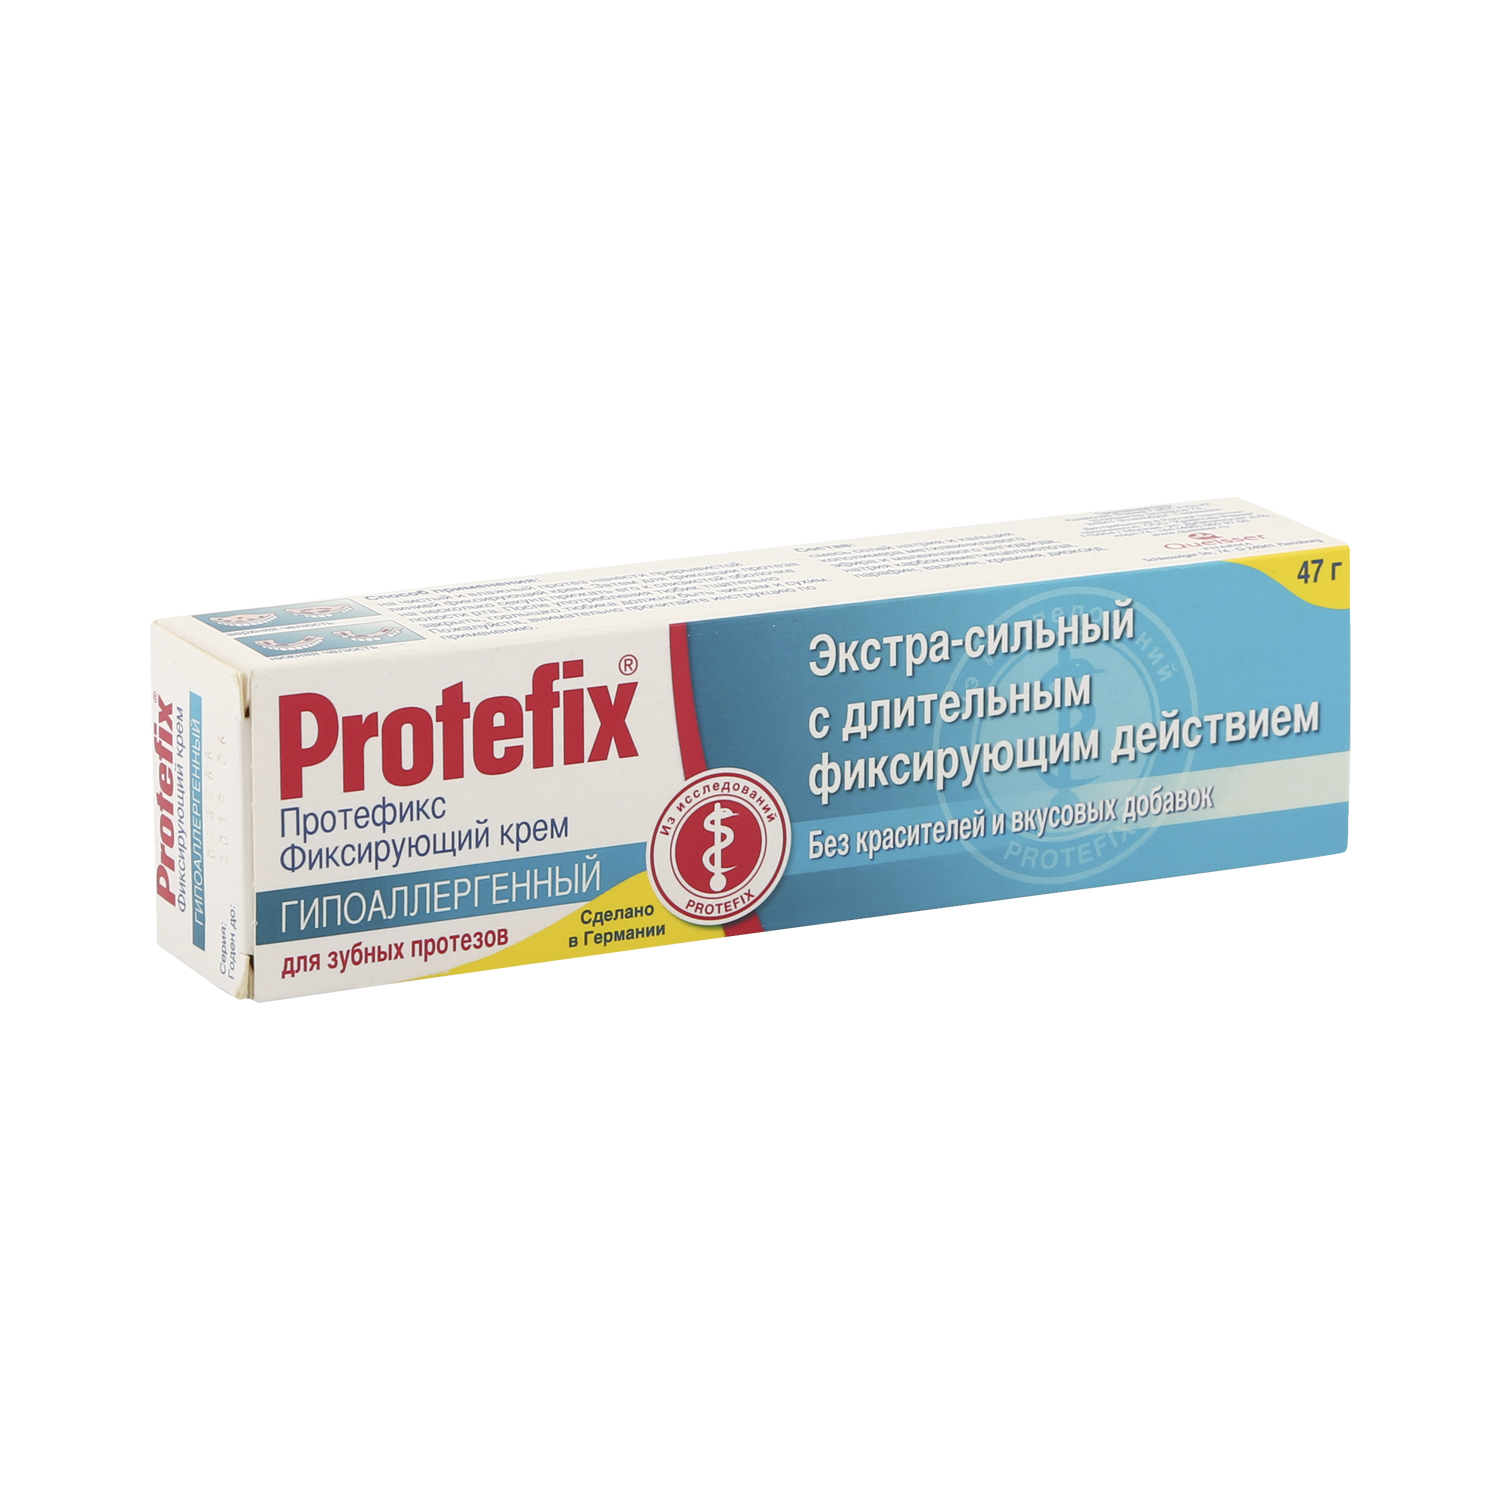 Протефикс крем для фиксации зубн.протезов гипоаллергенный экстрасильный 40мл протефикс крем для фиксации зубн протезов экстра сильный алоэ 40мл